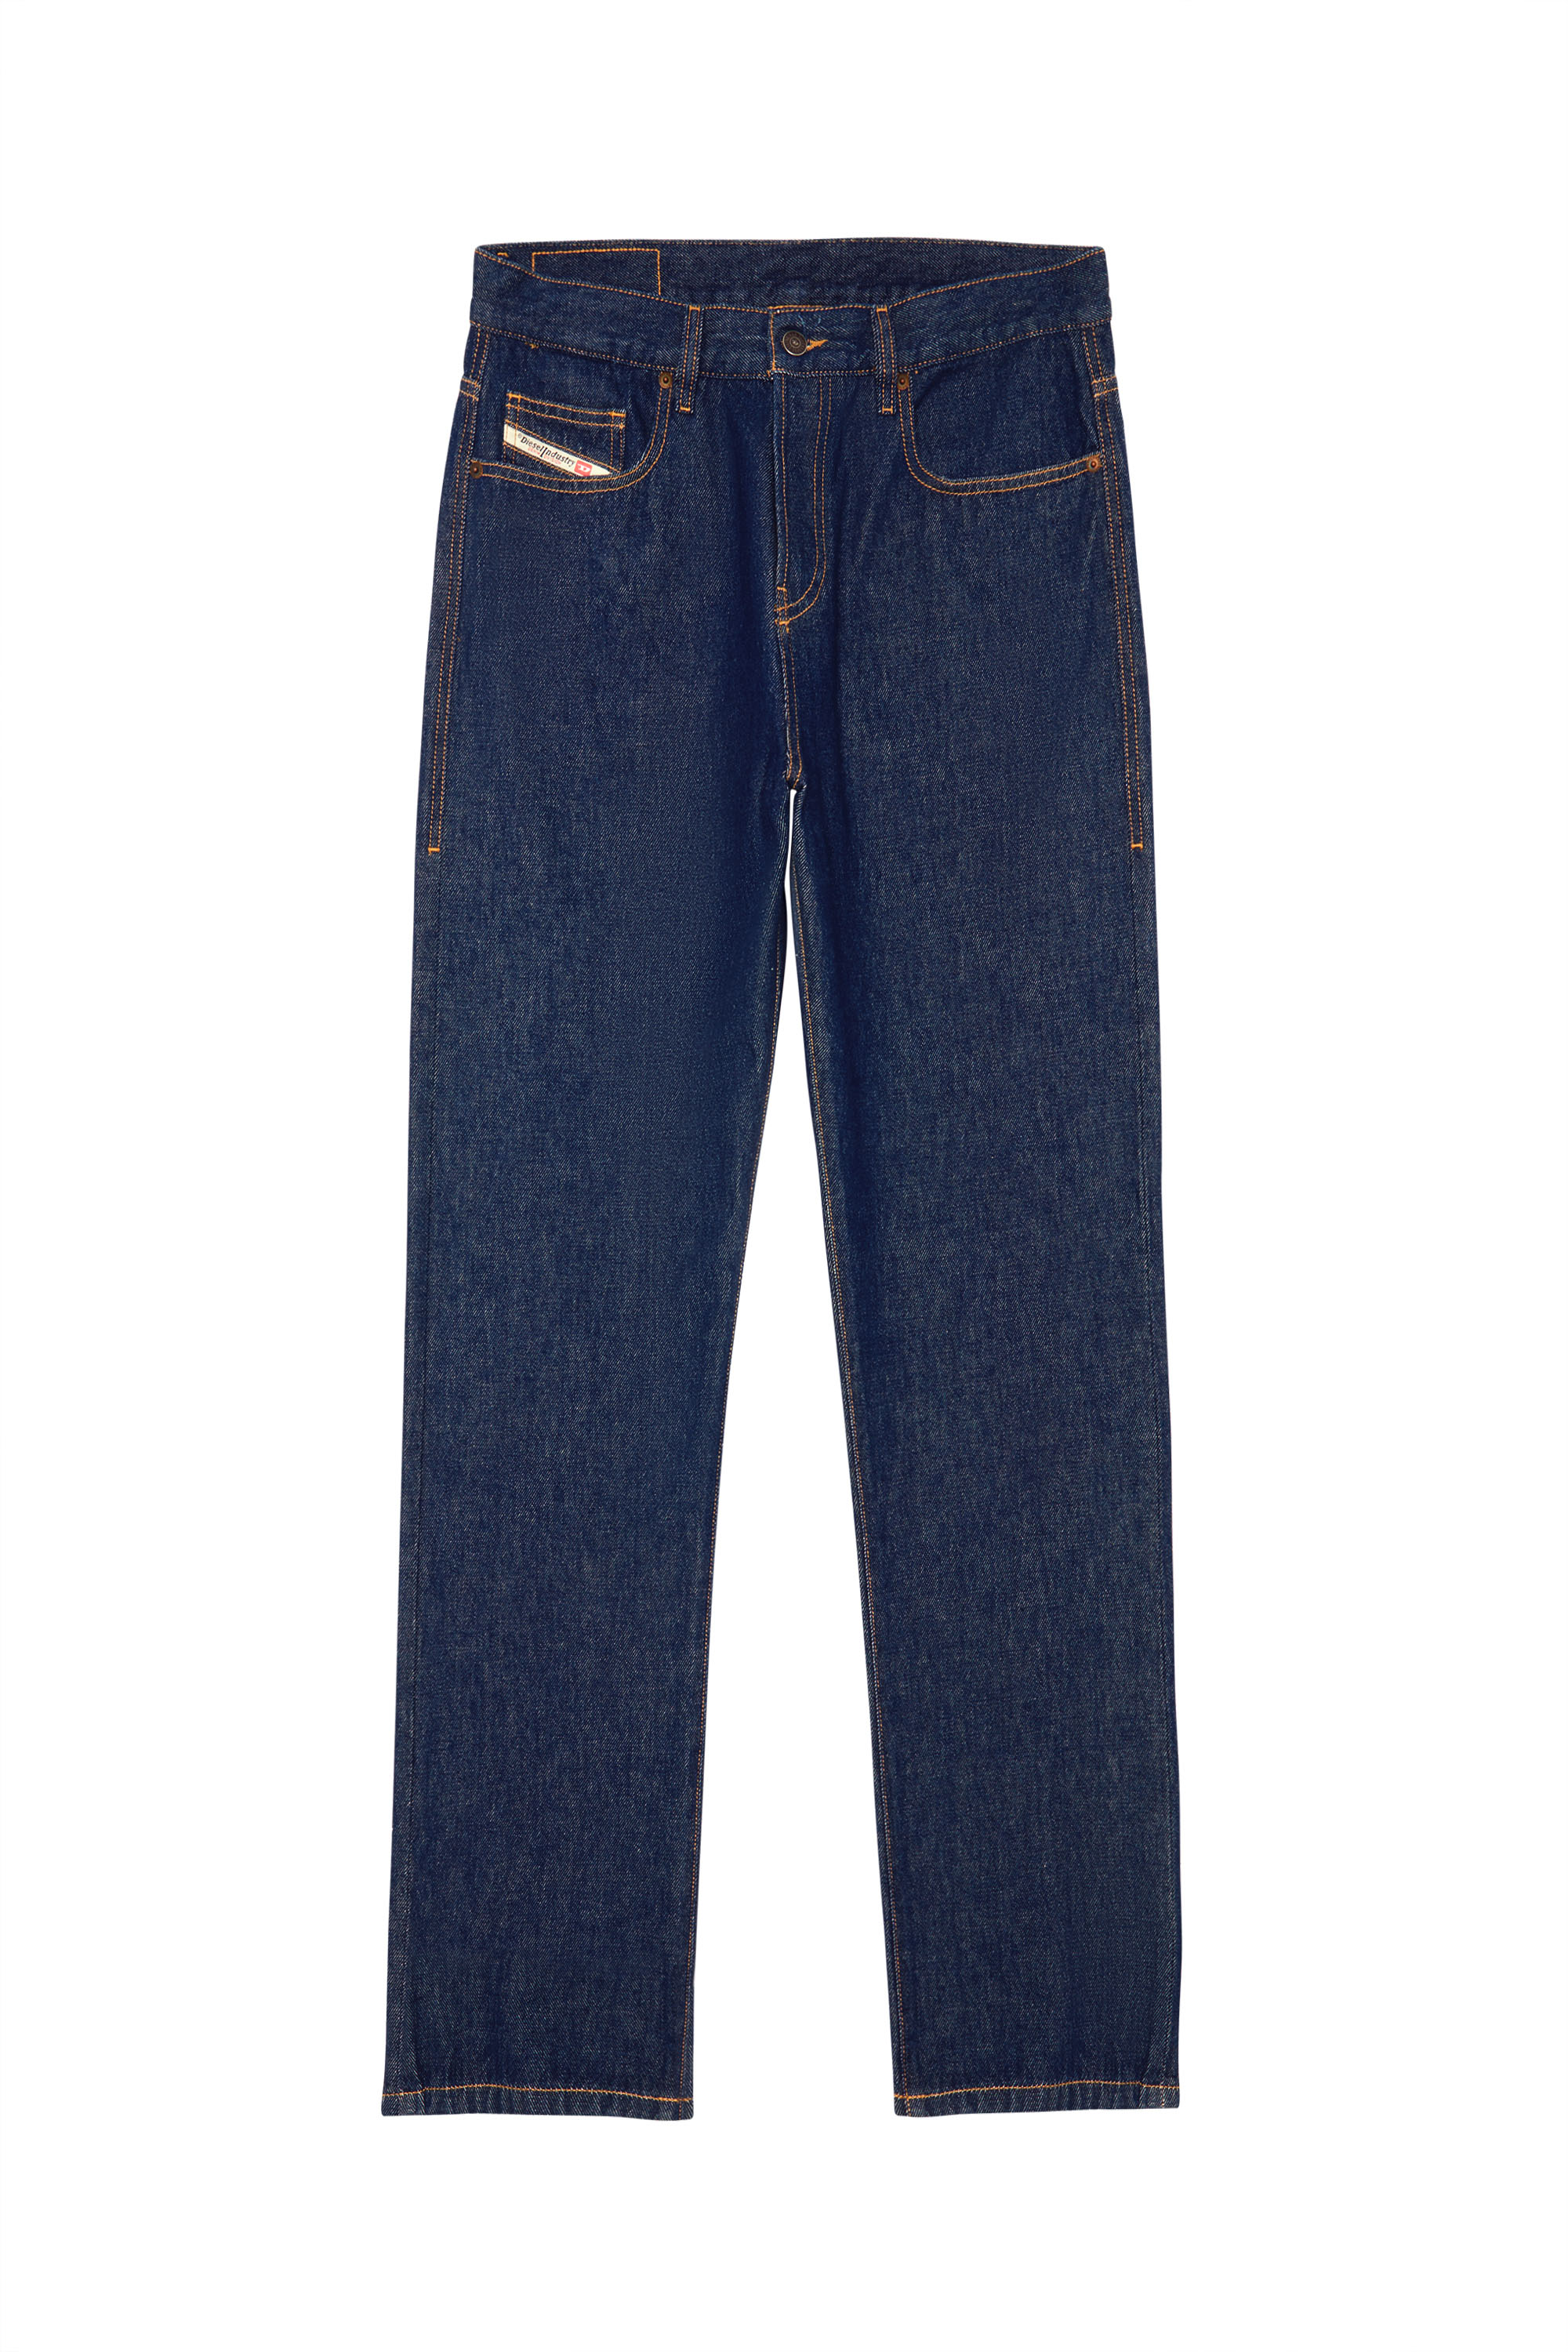 2020 D-VIKER Z9B85 Straight Jeans, Dunkelblau - Jeans